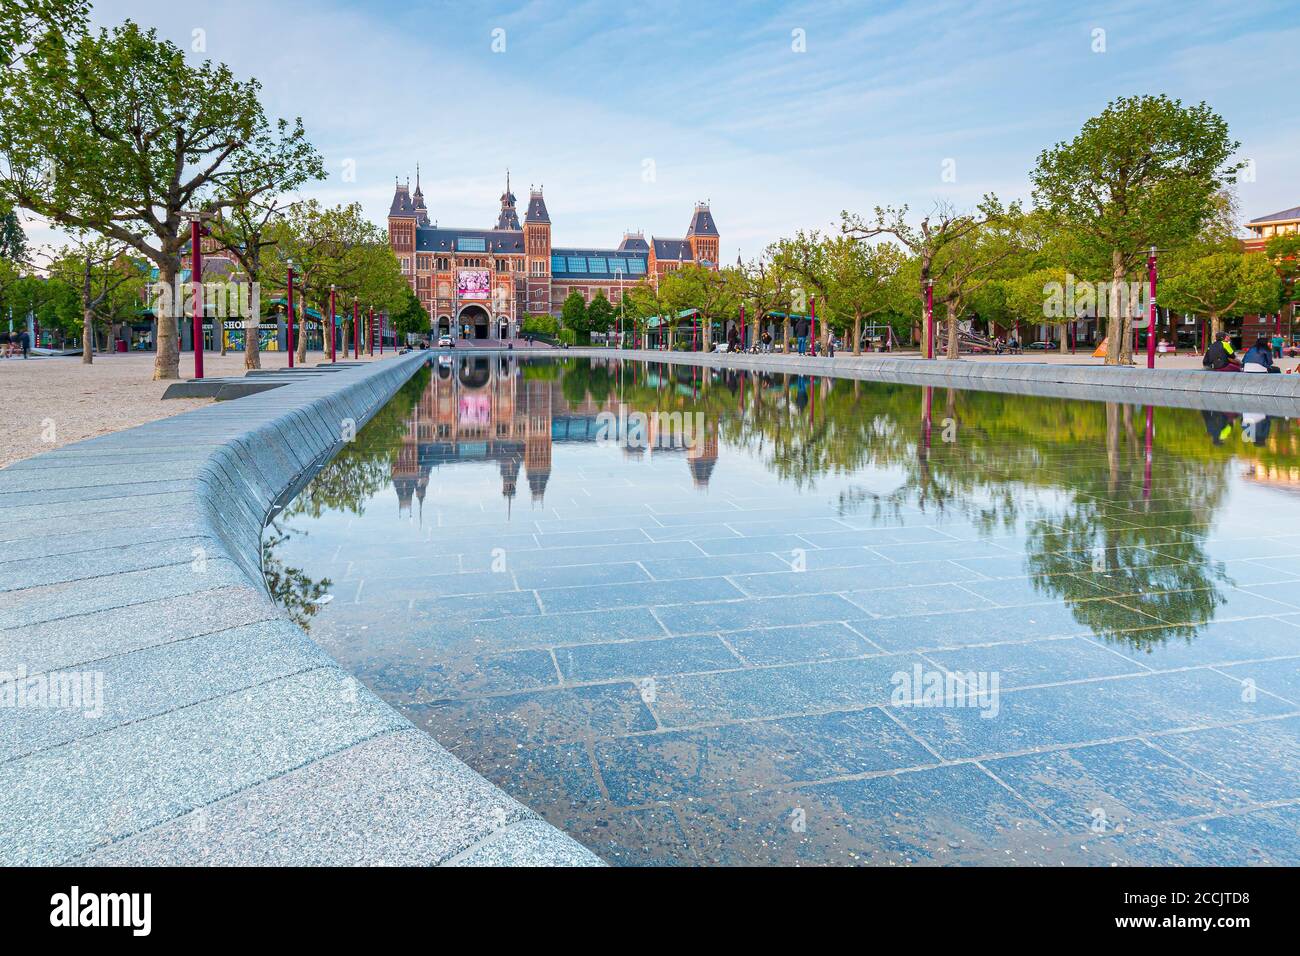 07 maggio 2020, Amsterdam, Paesi Bassi - il Rijksmuseum è un famoso punto di riferimento turistico ma è chiuso a causa di misure di virus corona. Gamma dinamica elevata HDR im Foto Stock